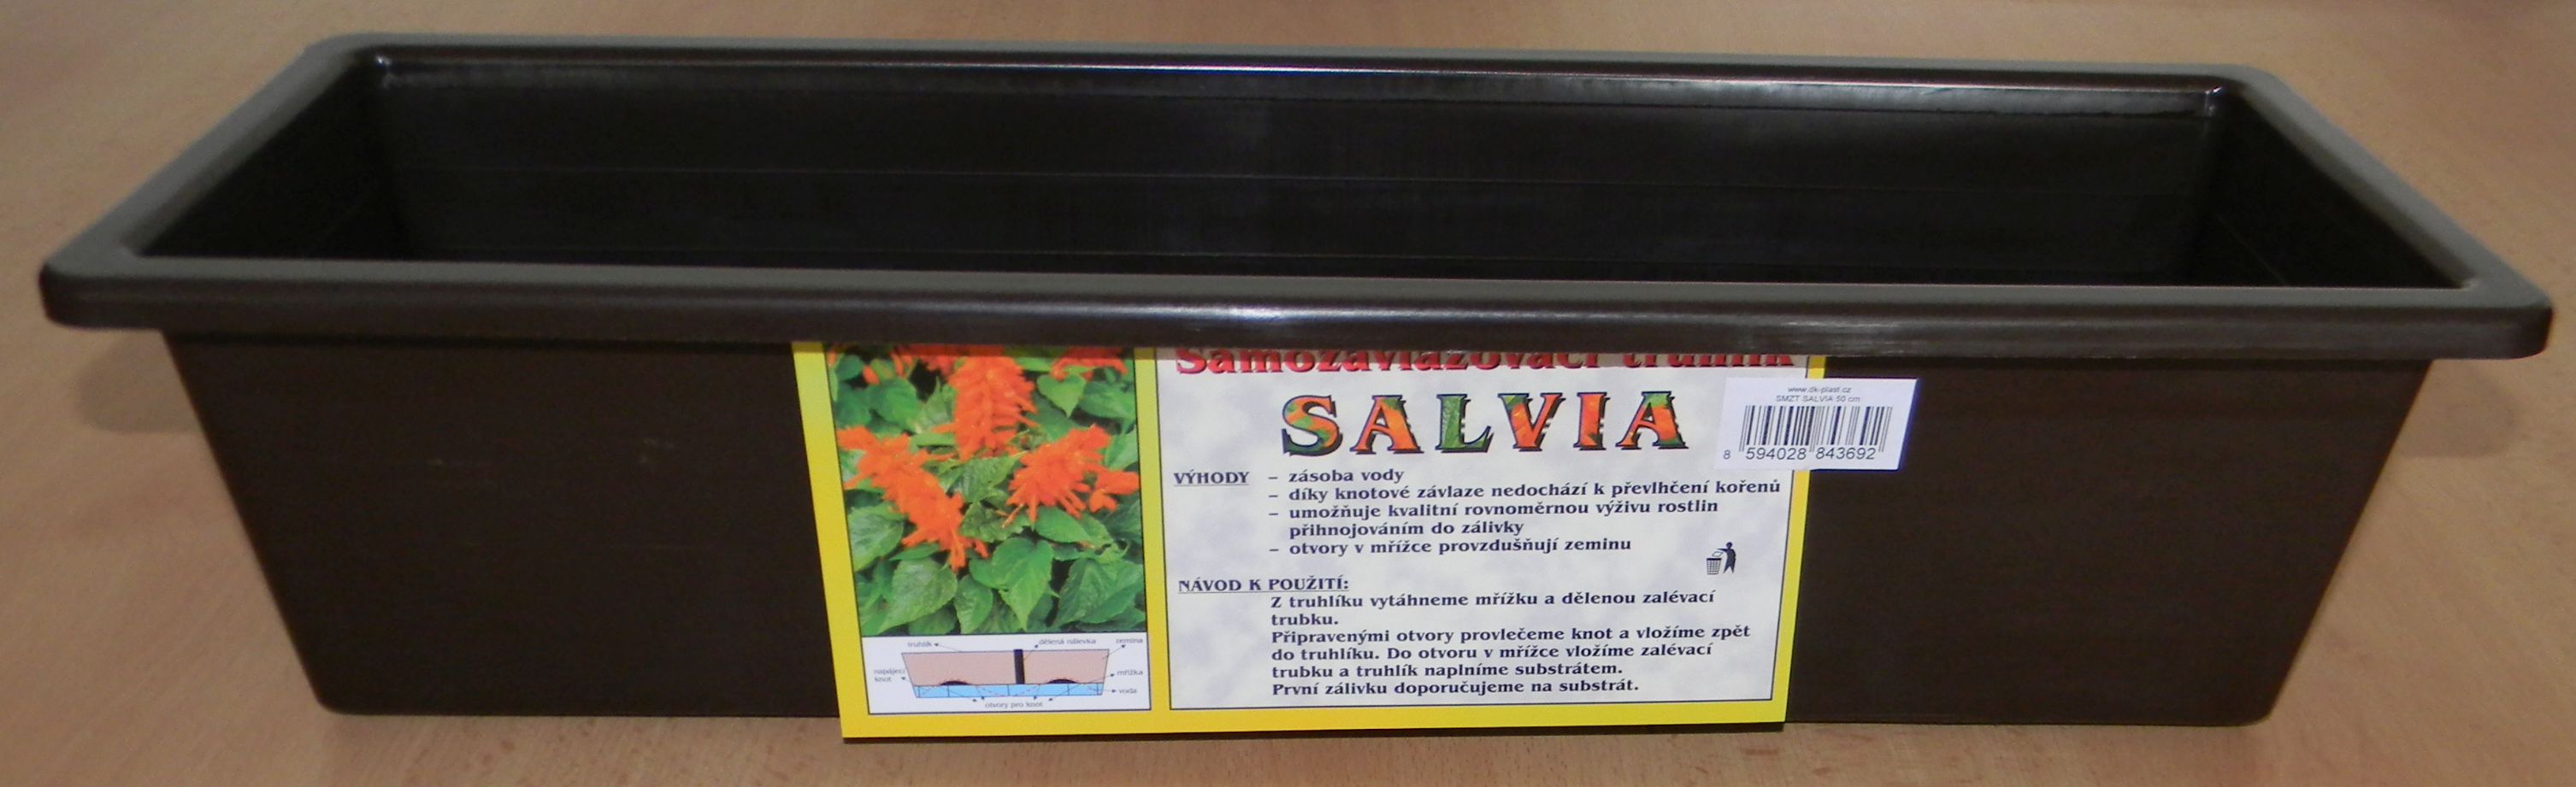 Truhlík samozavlažovací 60 cm hnědý Salvia